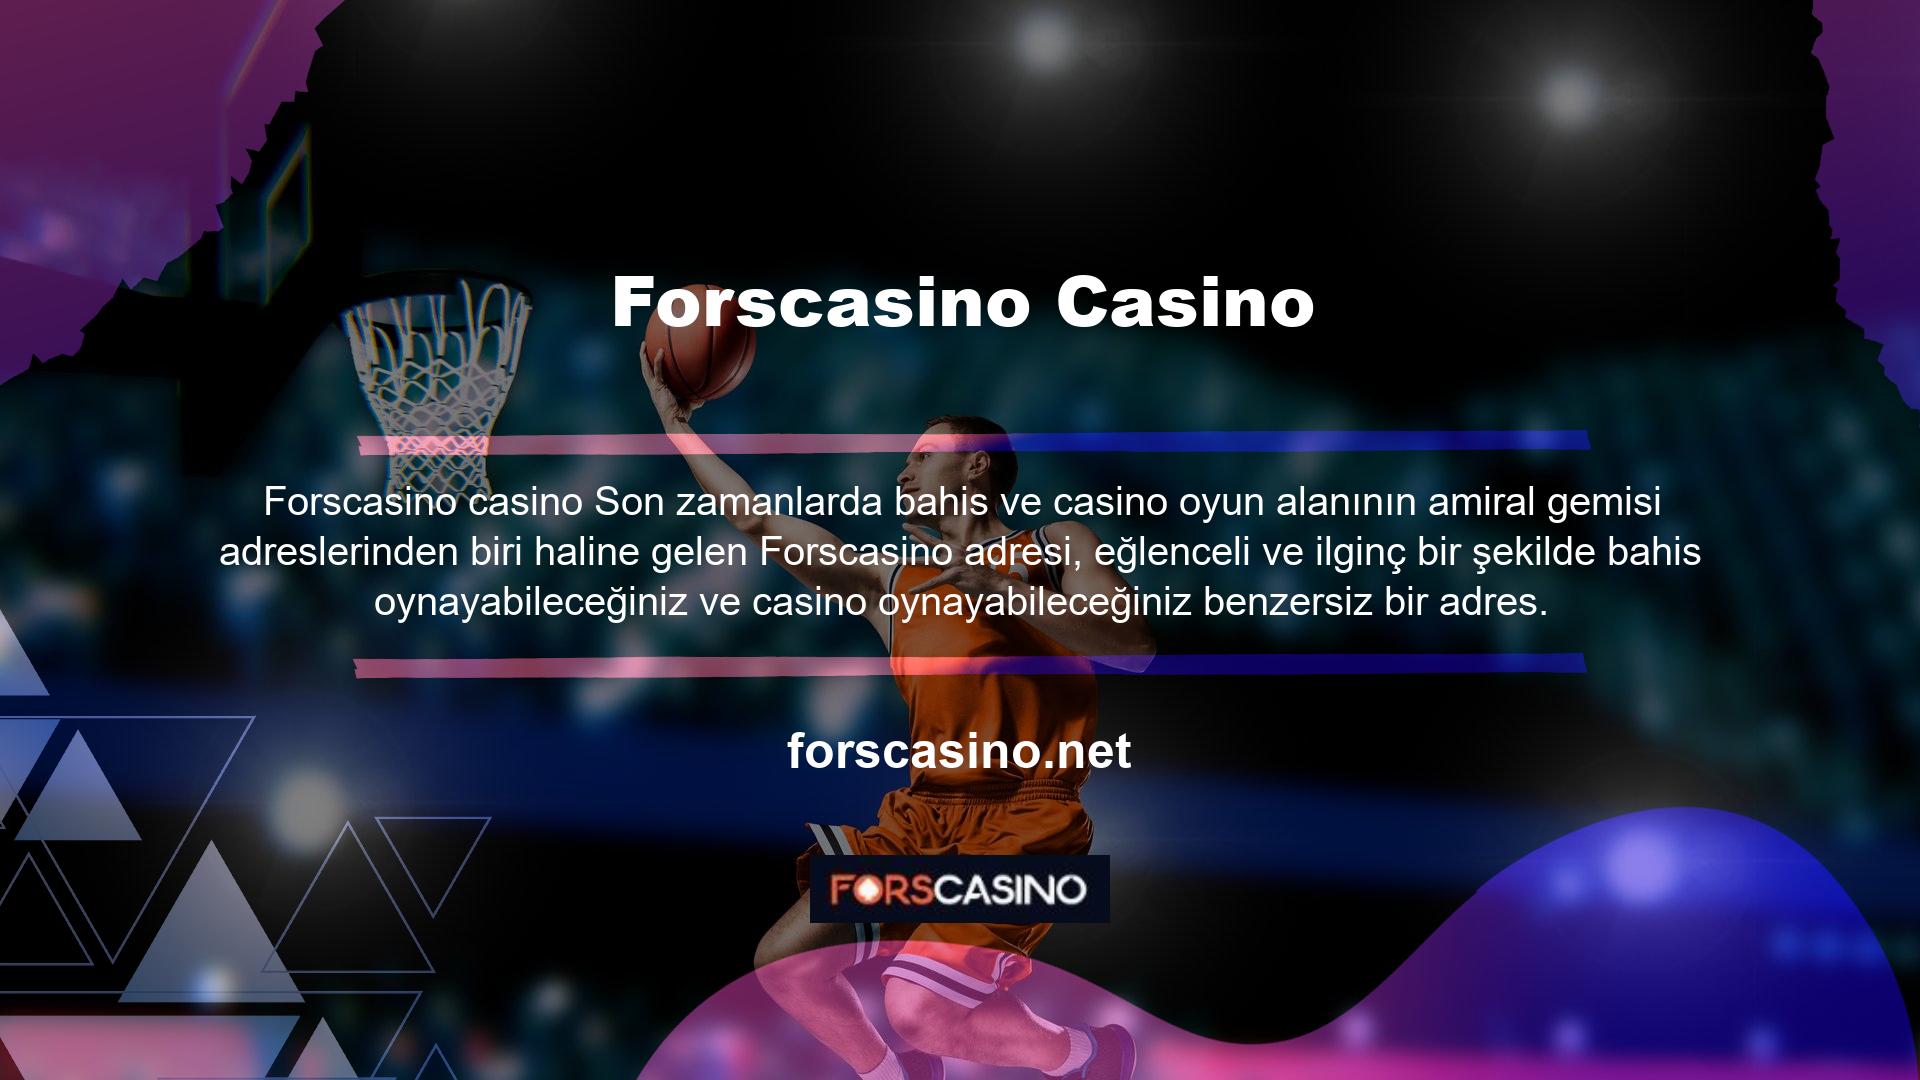 Müşteri hizmetleri söz konusu olduğunda, Forscasino benzersiz ve yüksek kaliteli hizmet sunan bir casino ve casino destinasyonudur